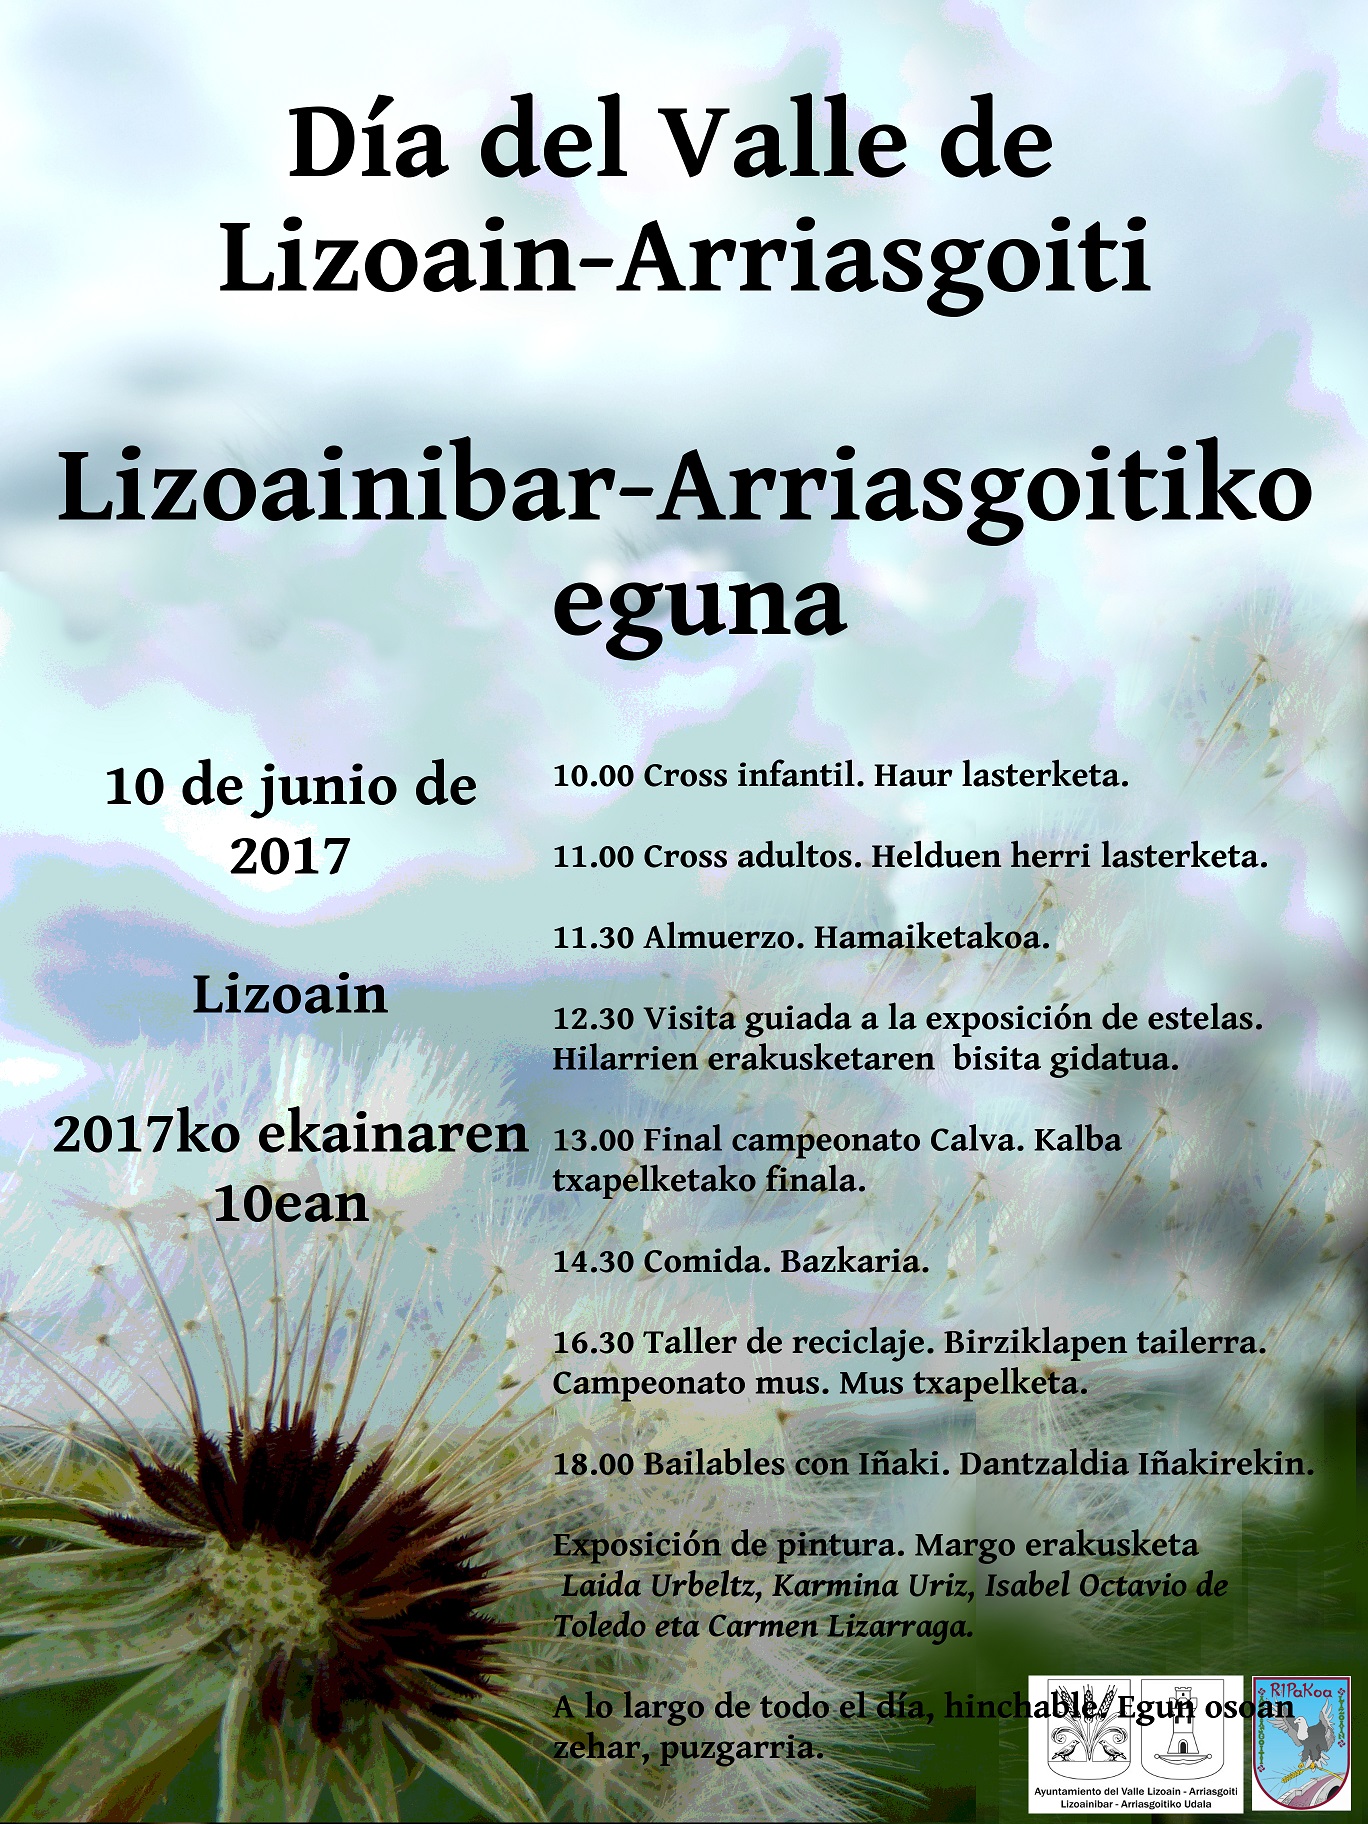 Lizoainibar-Arriasgoitiko eguna/Día del Valle de Lizoain-Arriasgoiti